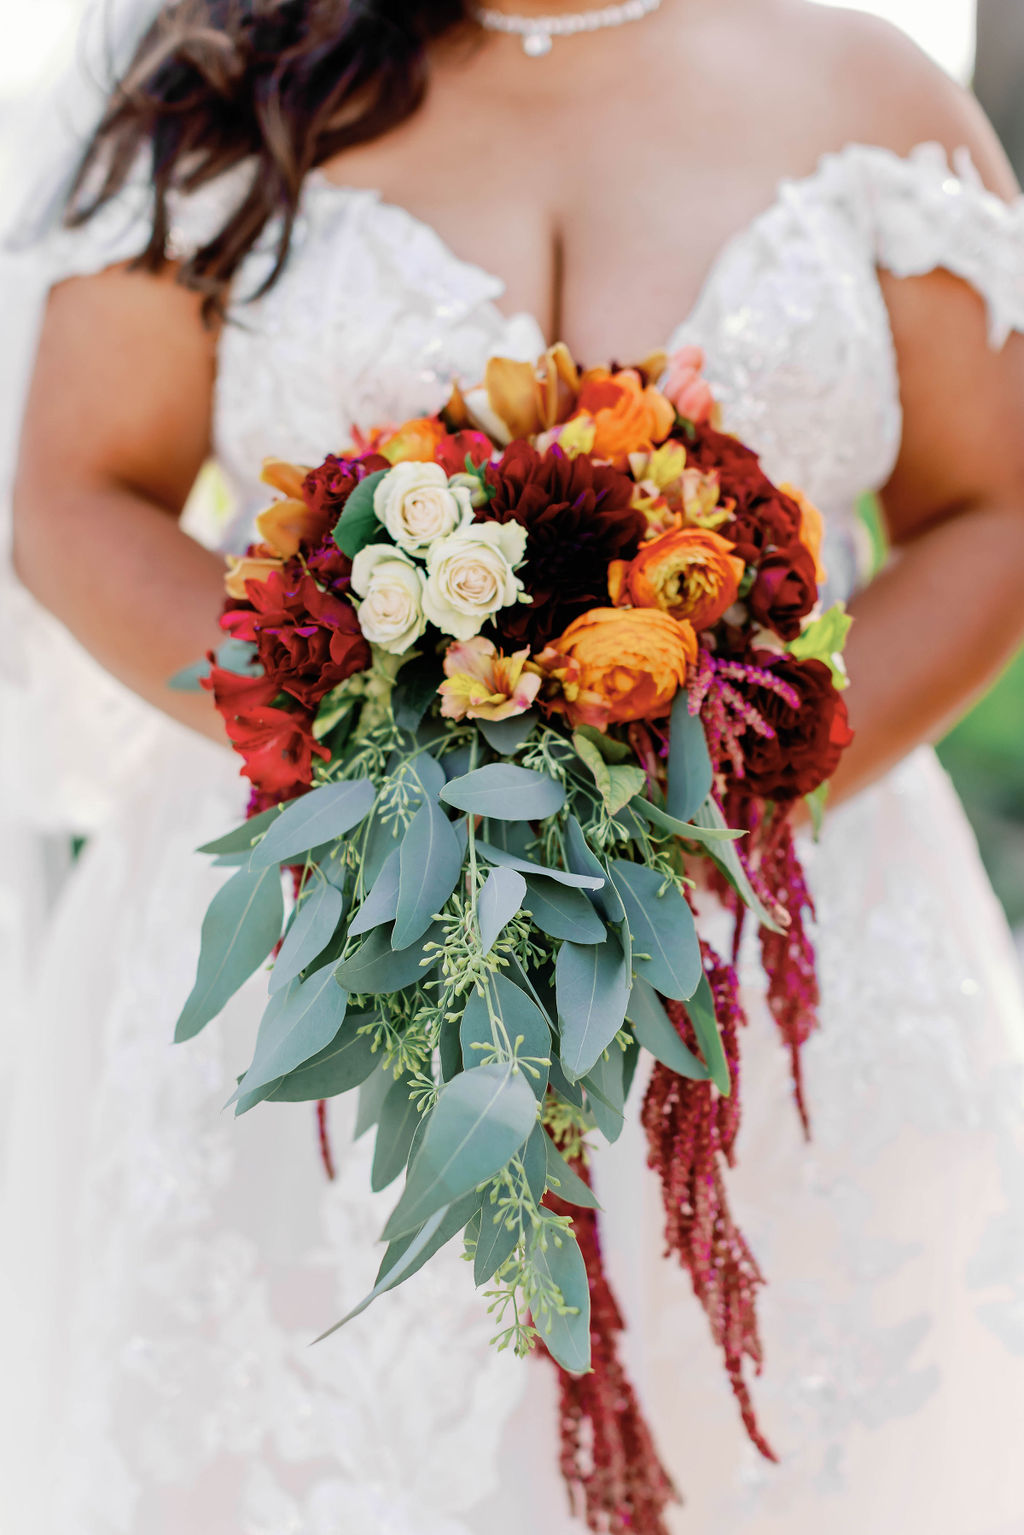 Bridal Bouquet at Mission Santa Barbara wedding | Photo by Sarah Block Photography